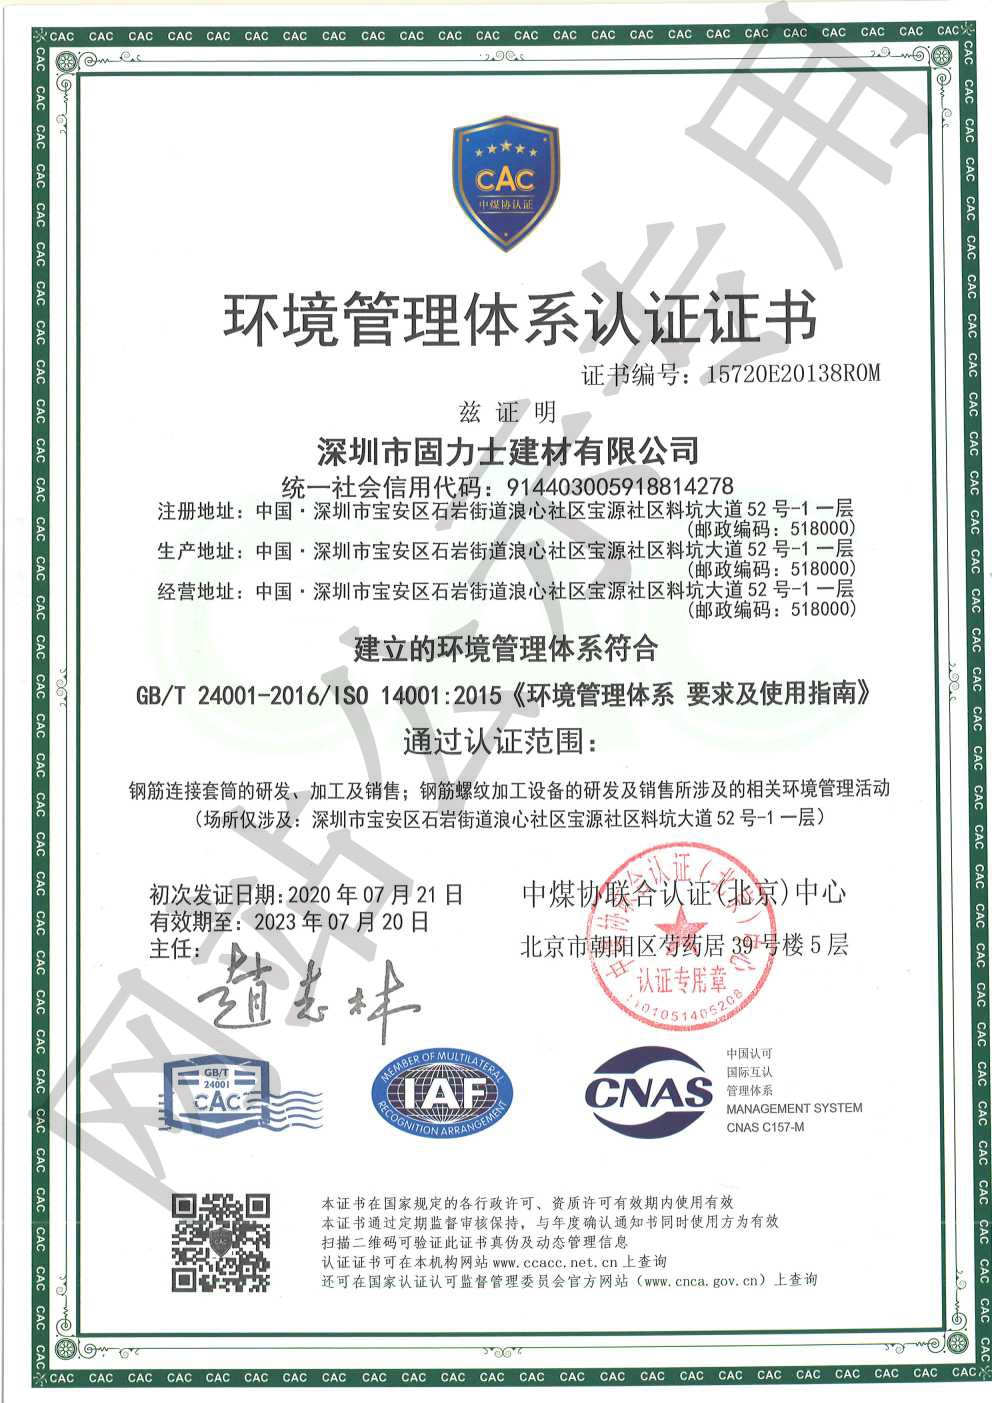 芗城ISO14001证书